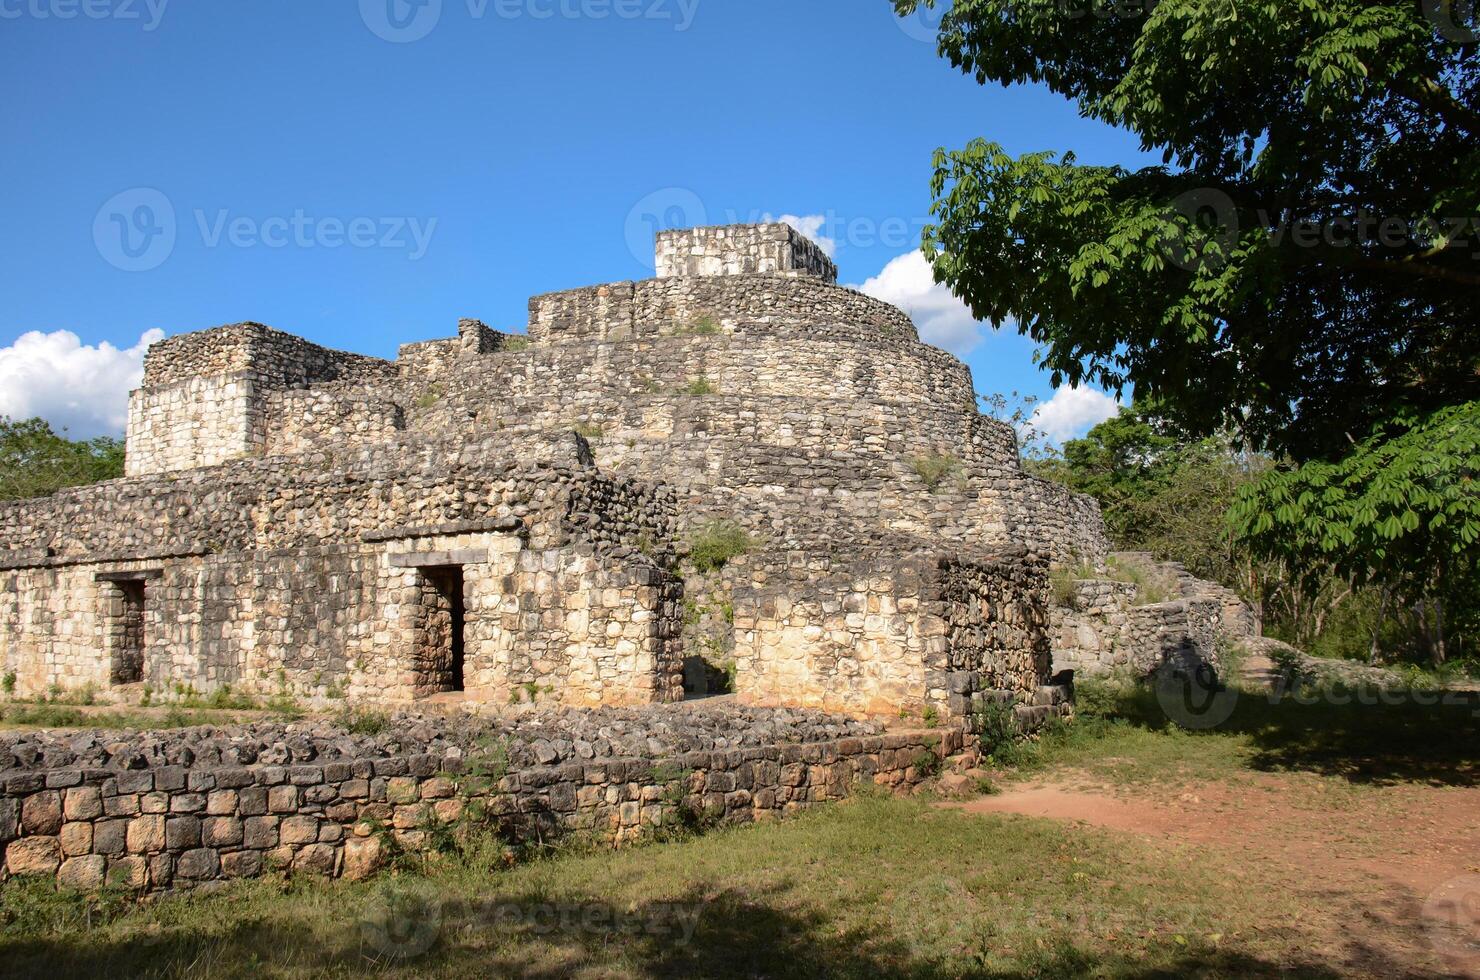 ek balam archeologisch plaats Bij Mexico foto